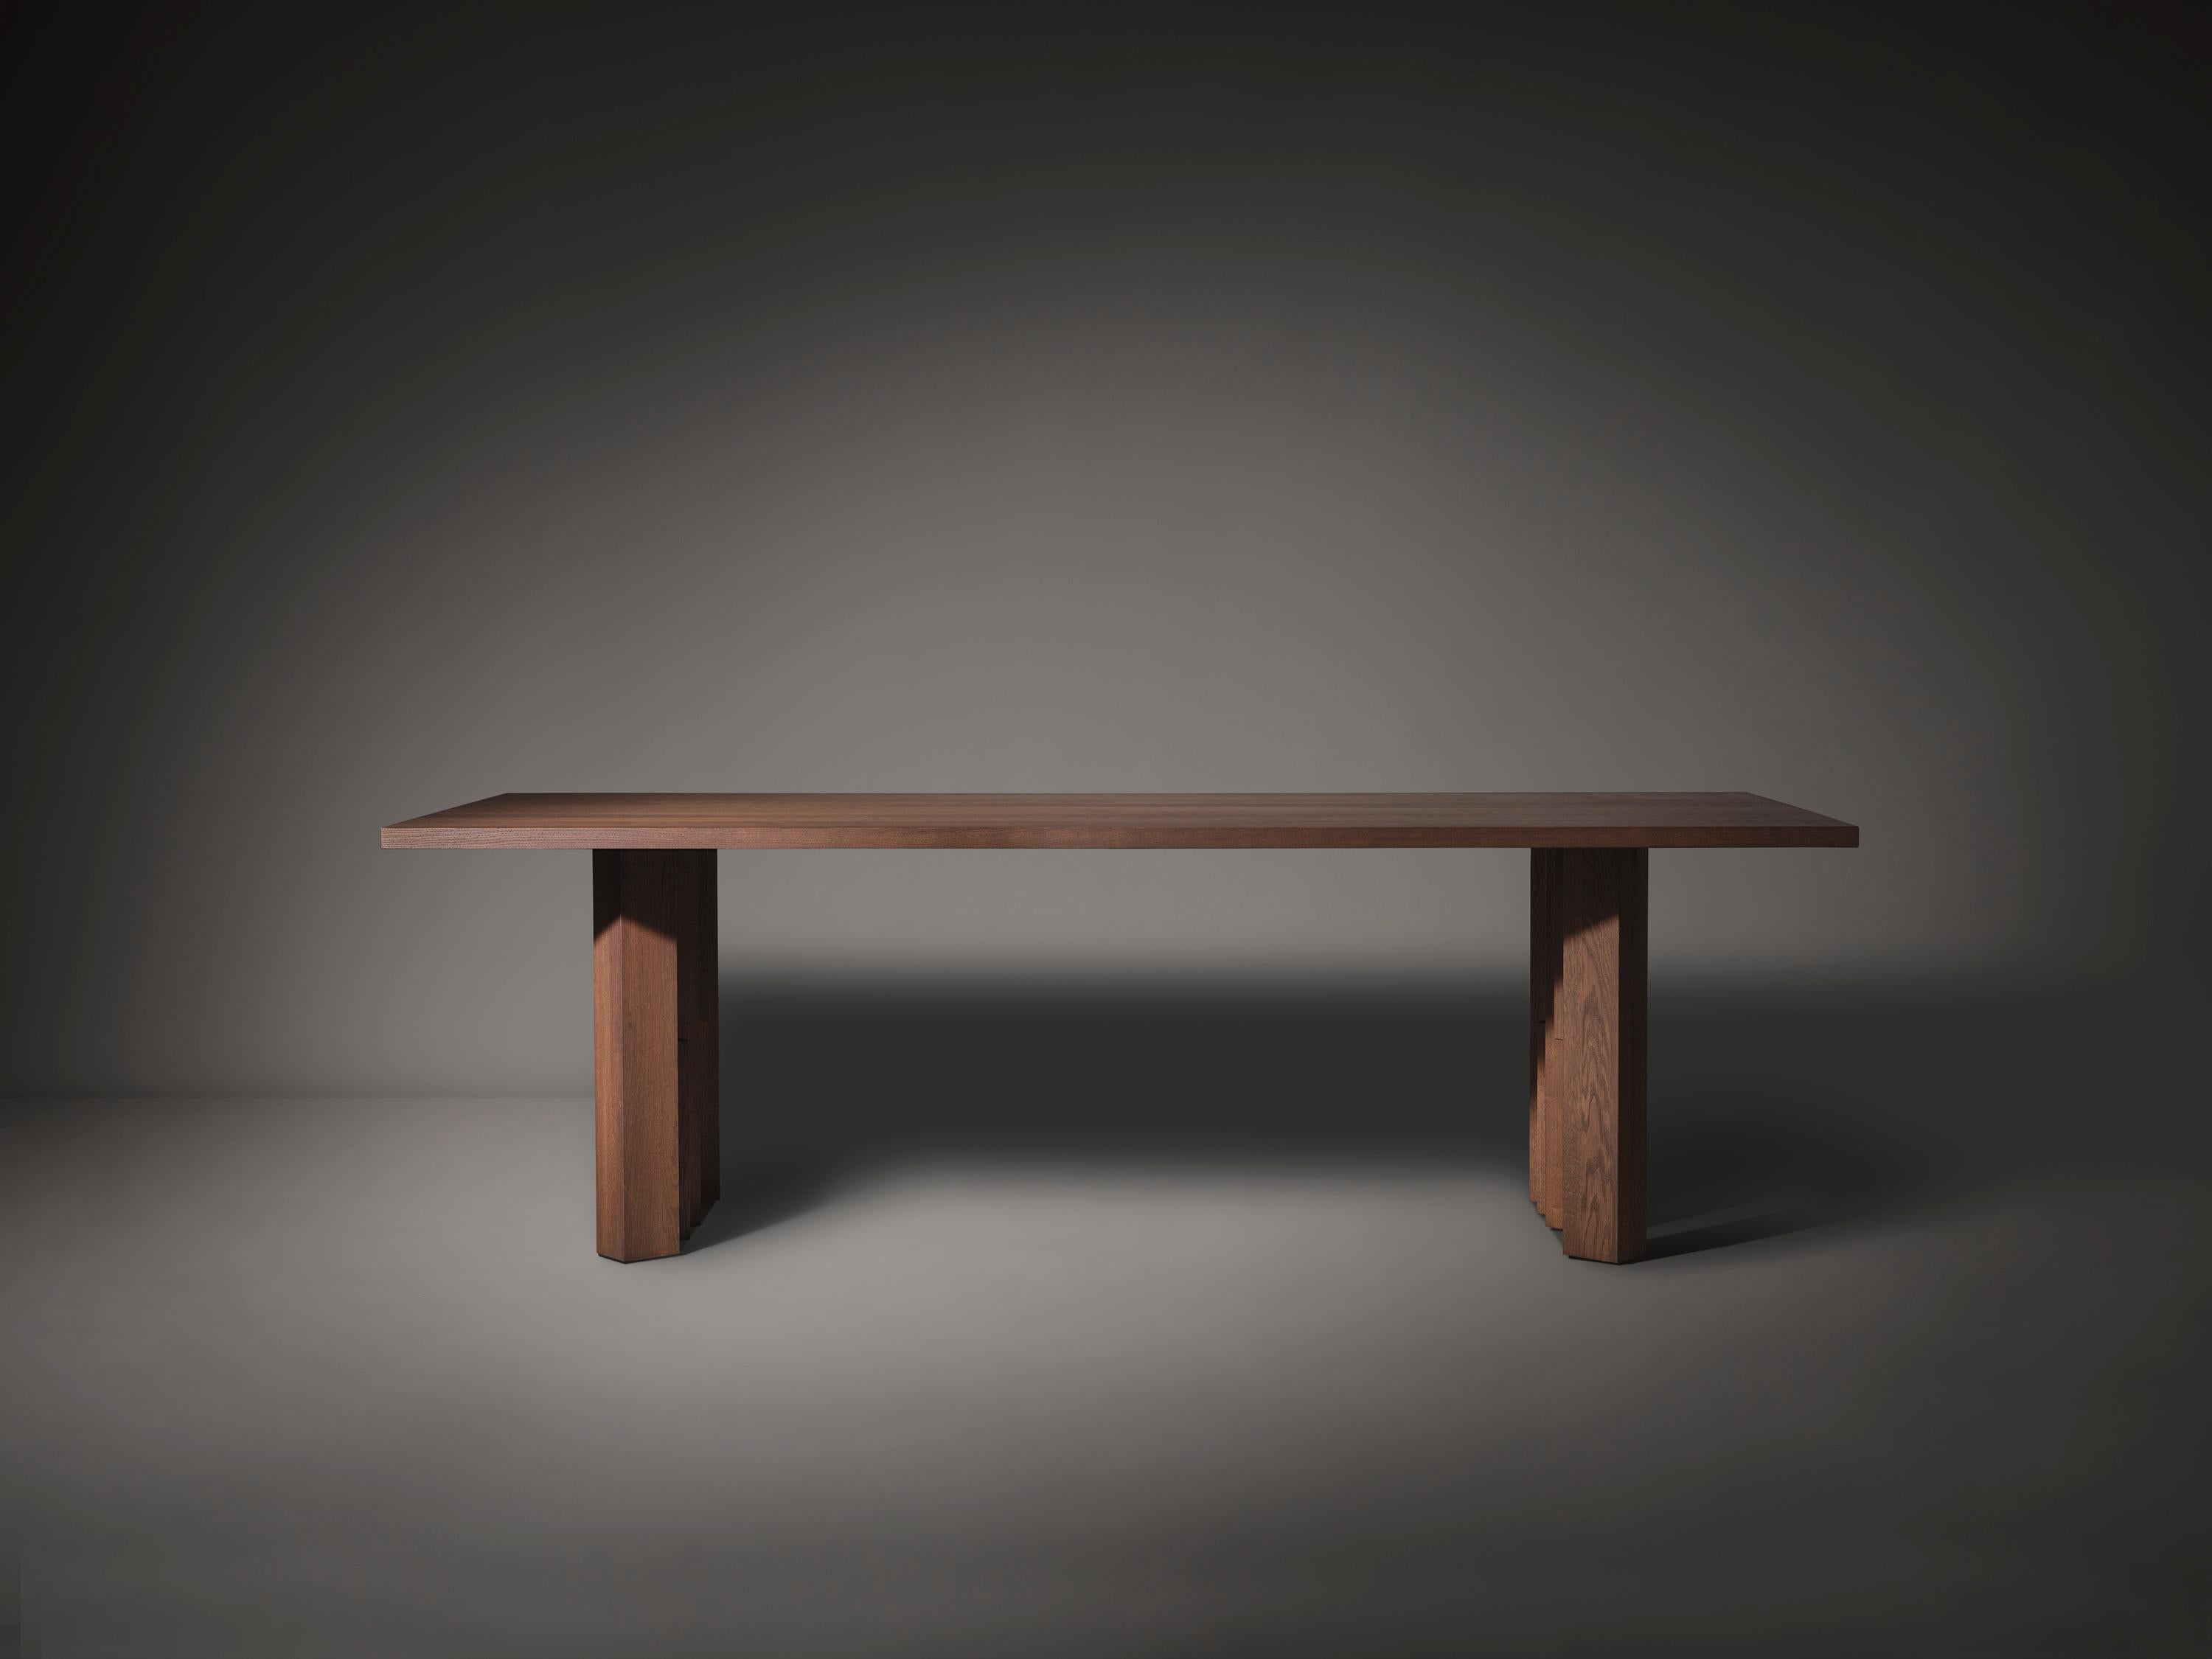 La table Fenestra, inspirée du style de l'école d'Amsterdam, est fabriquée en bois massif. Le design s'inspire de l'expressionnisme des briques, le mouvement architectural visible dans la zone du 